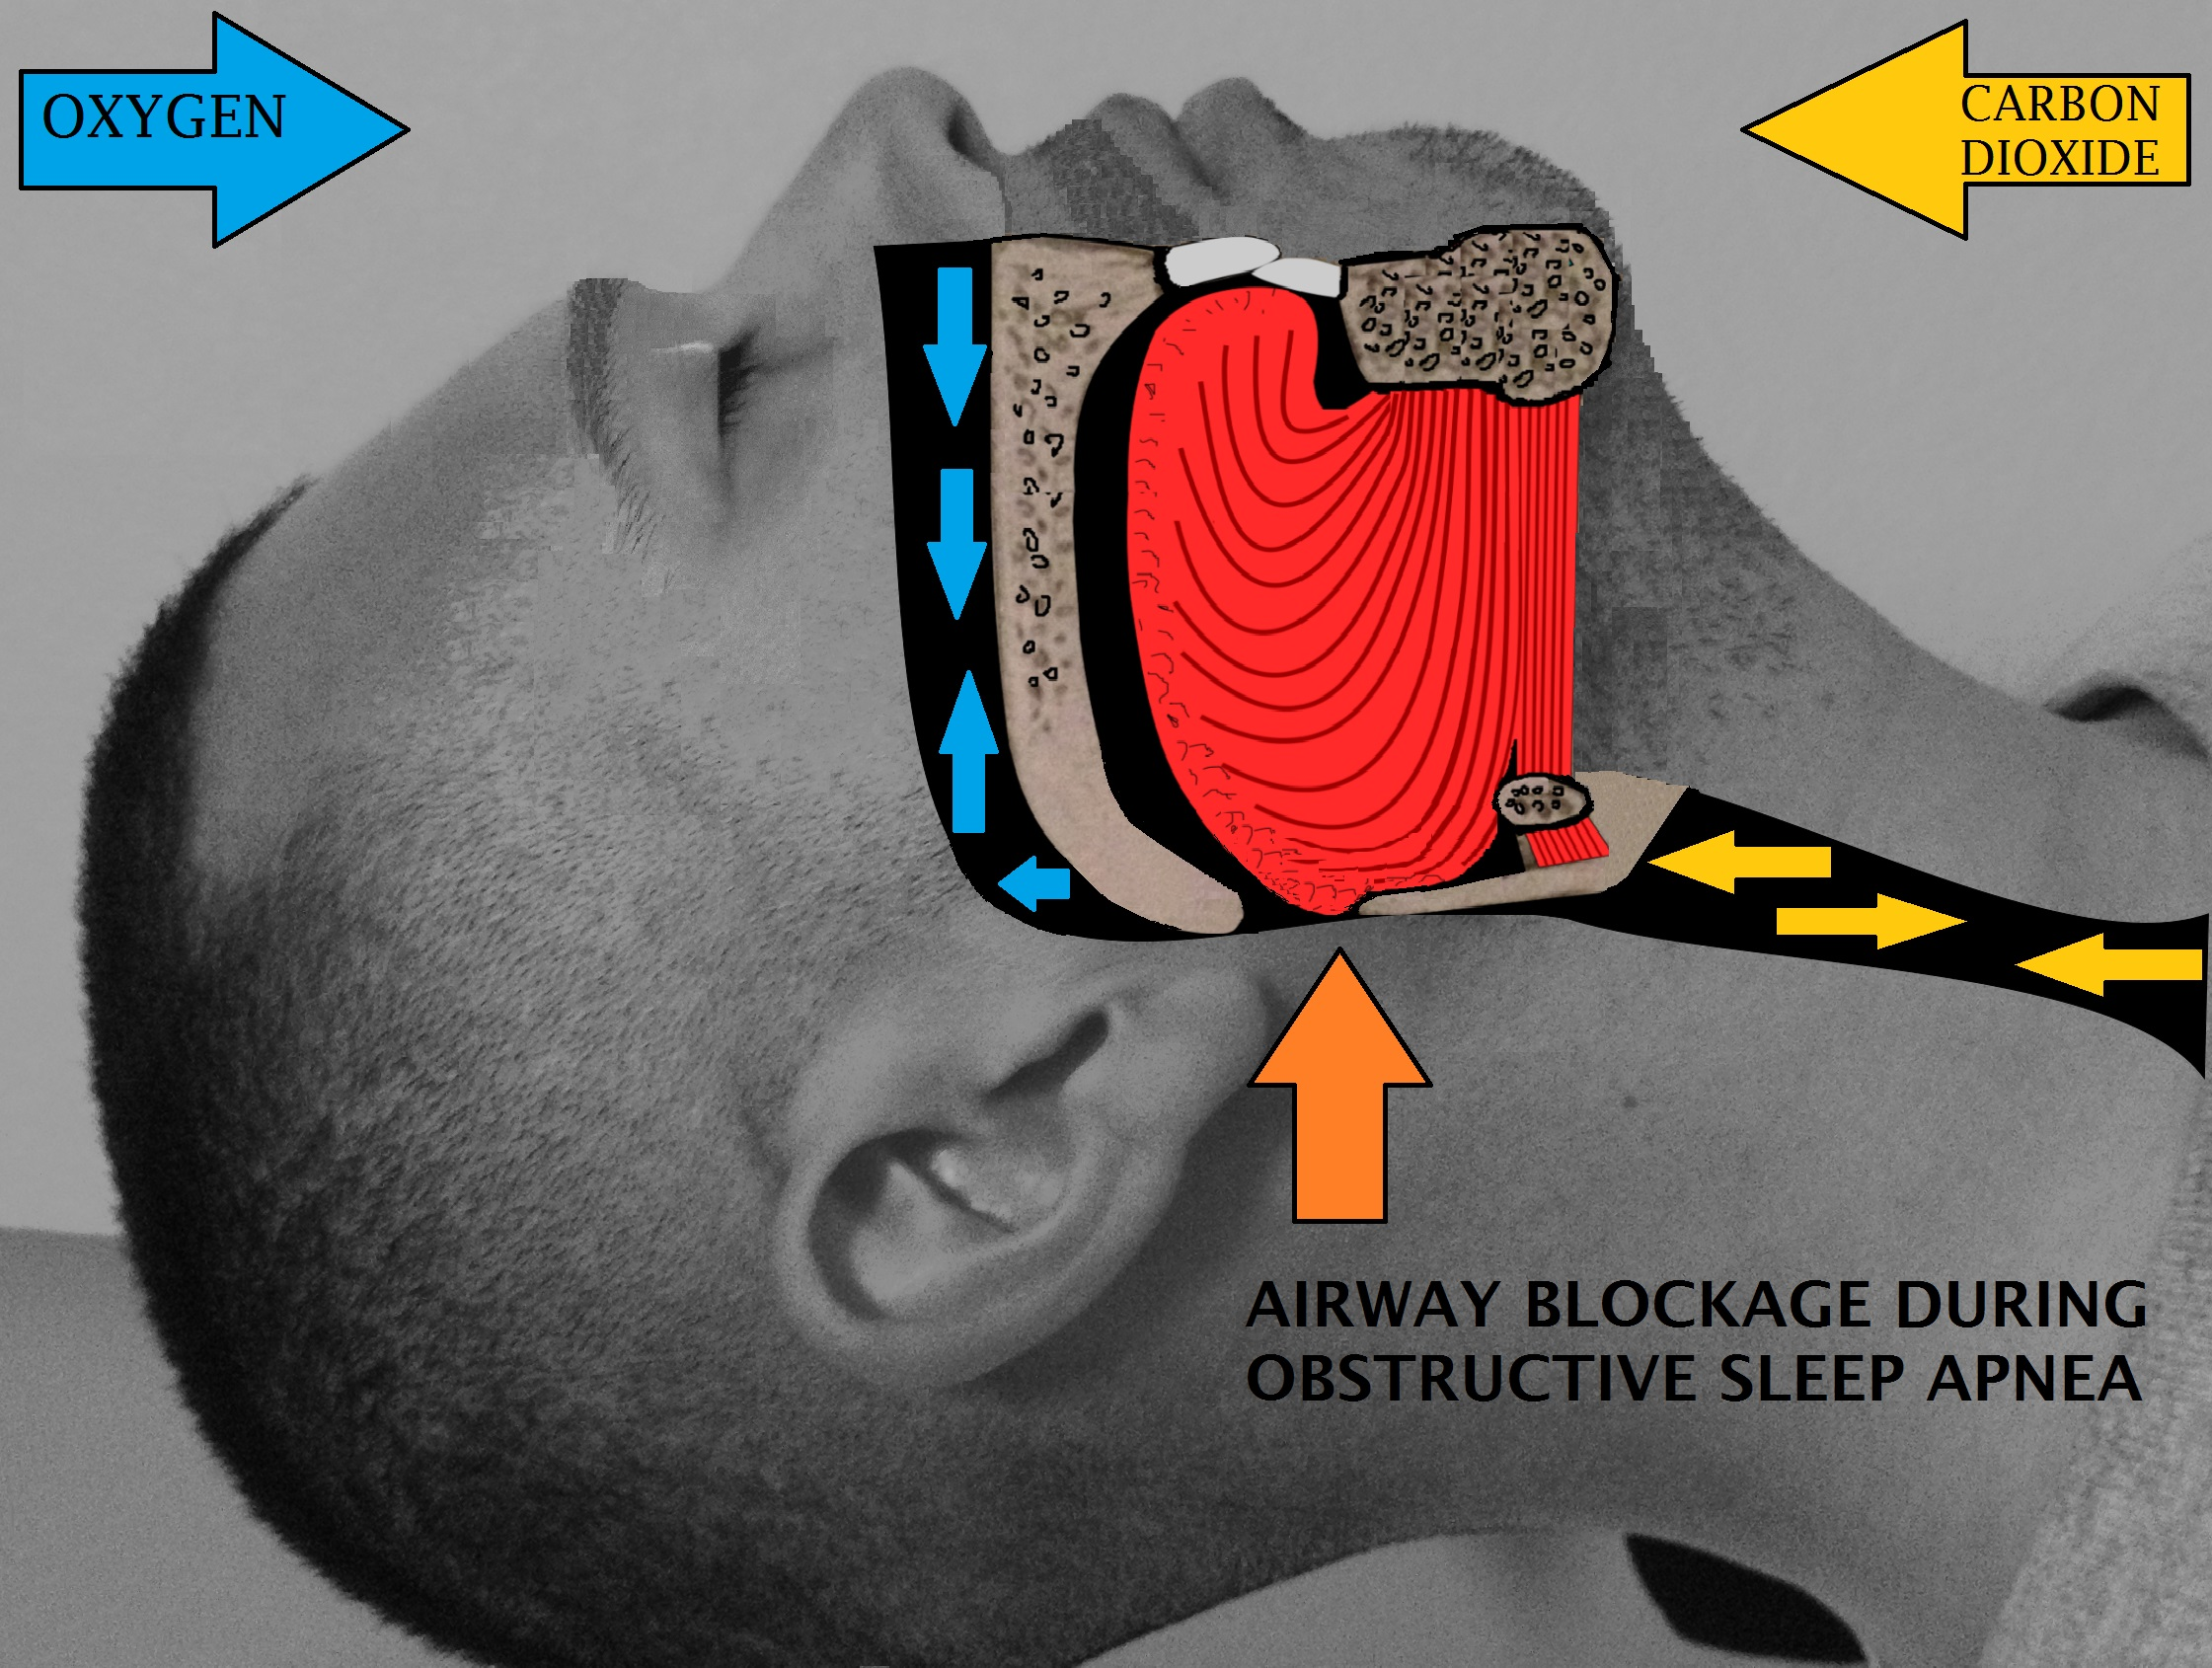 airway obstruction , oxygen, carbon dioxide, airway blockage during sleep apnea